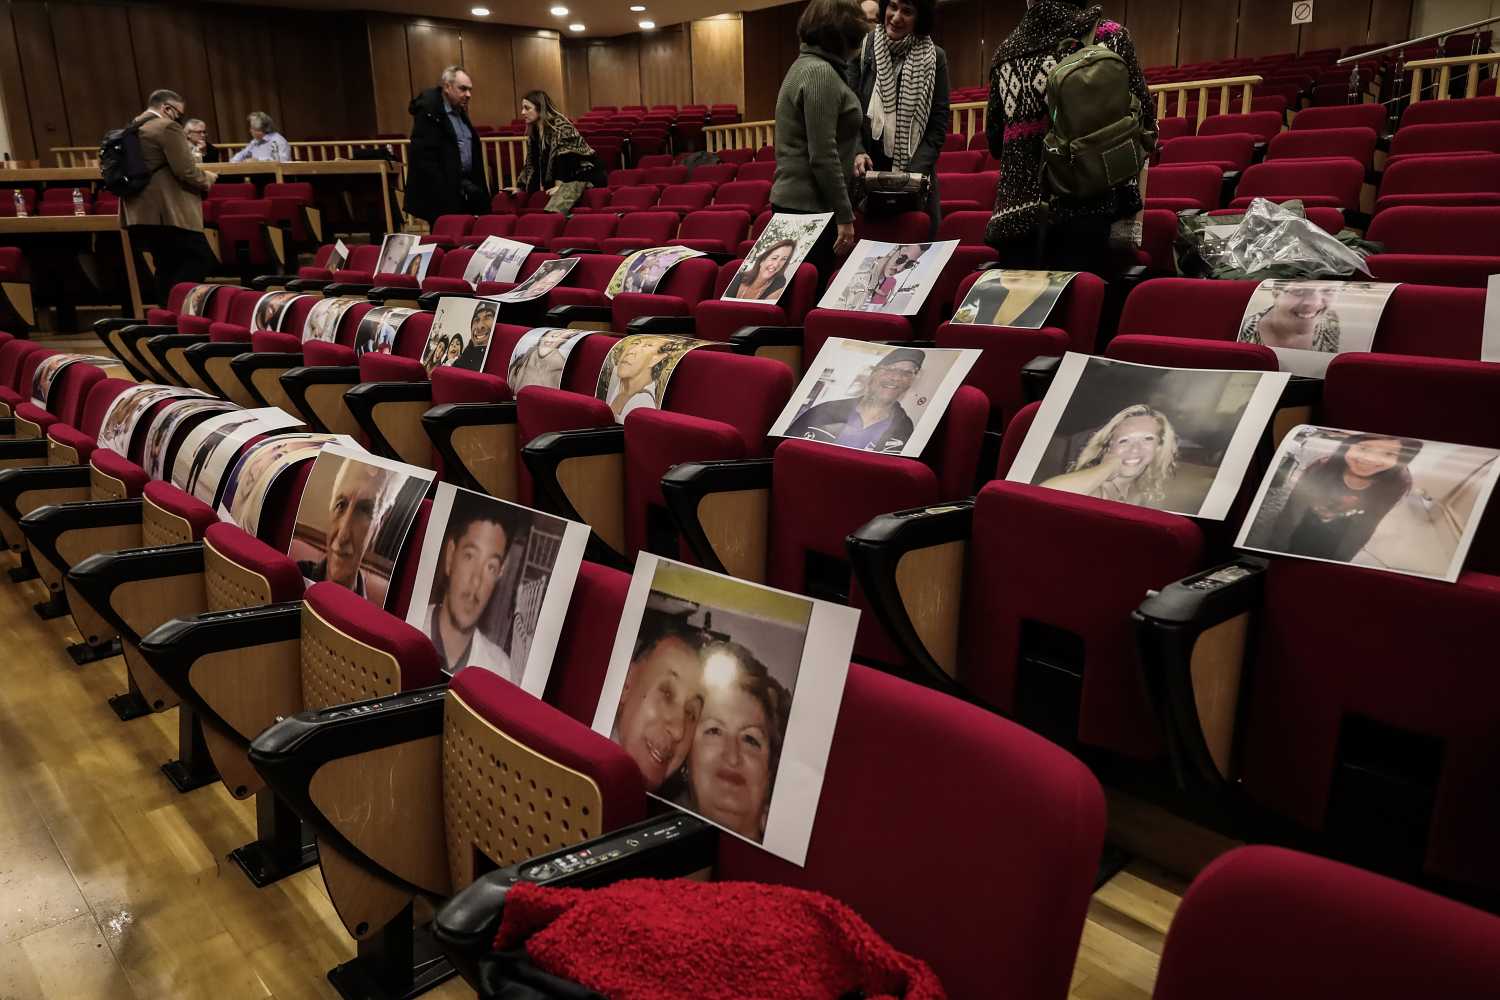 Δίκη για Μάτι: Φωτογραφίες των θυμάτων στα έδρανα του ακροατηρίου